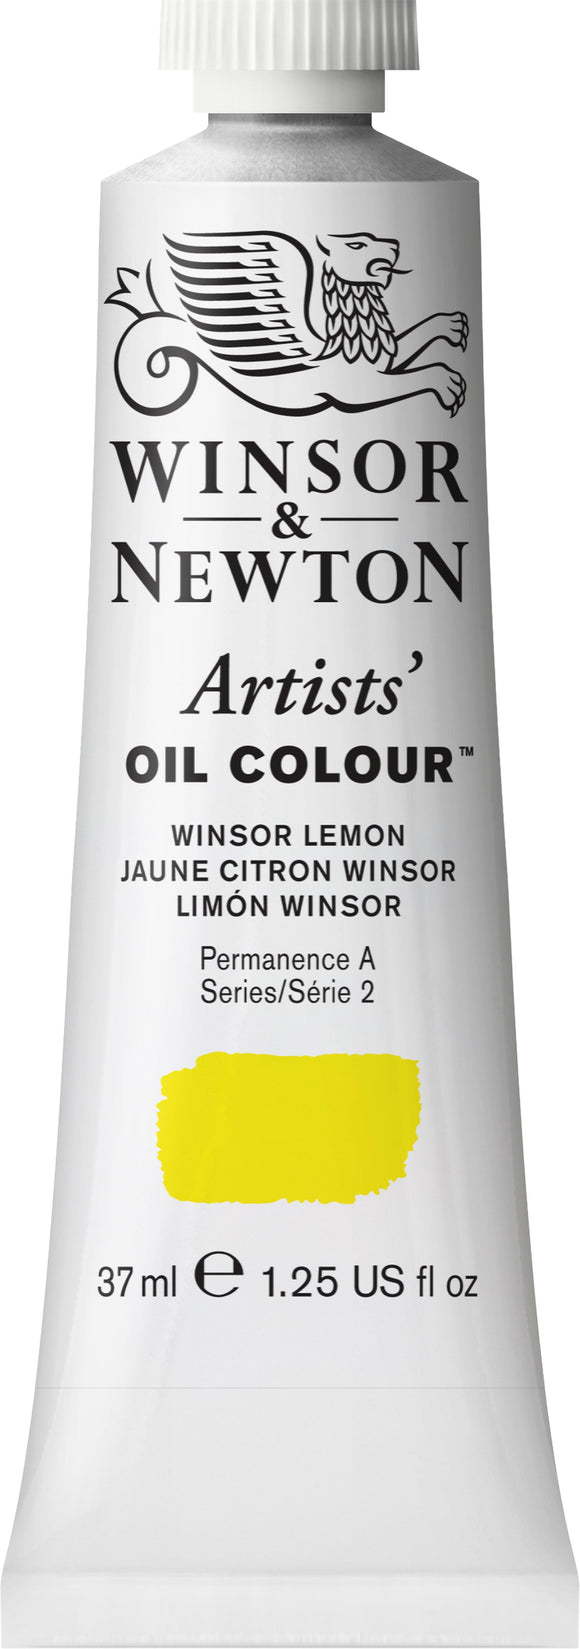 Winsor & Newton Artists Oil Color Winsor Lemon 37Ml